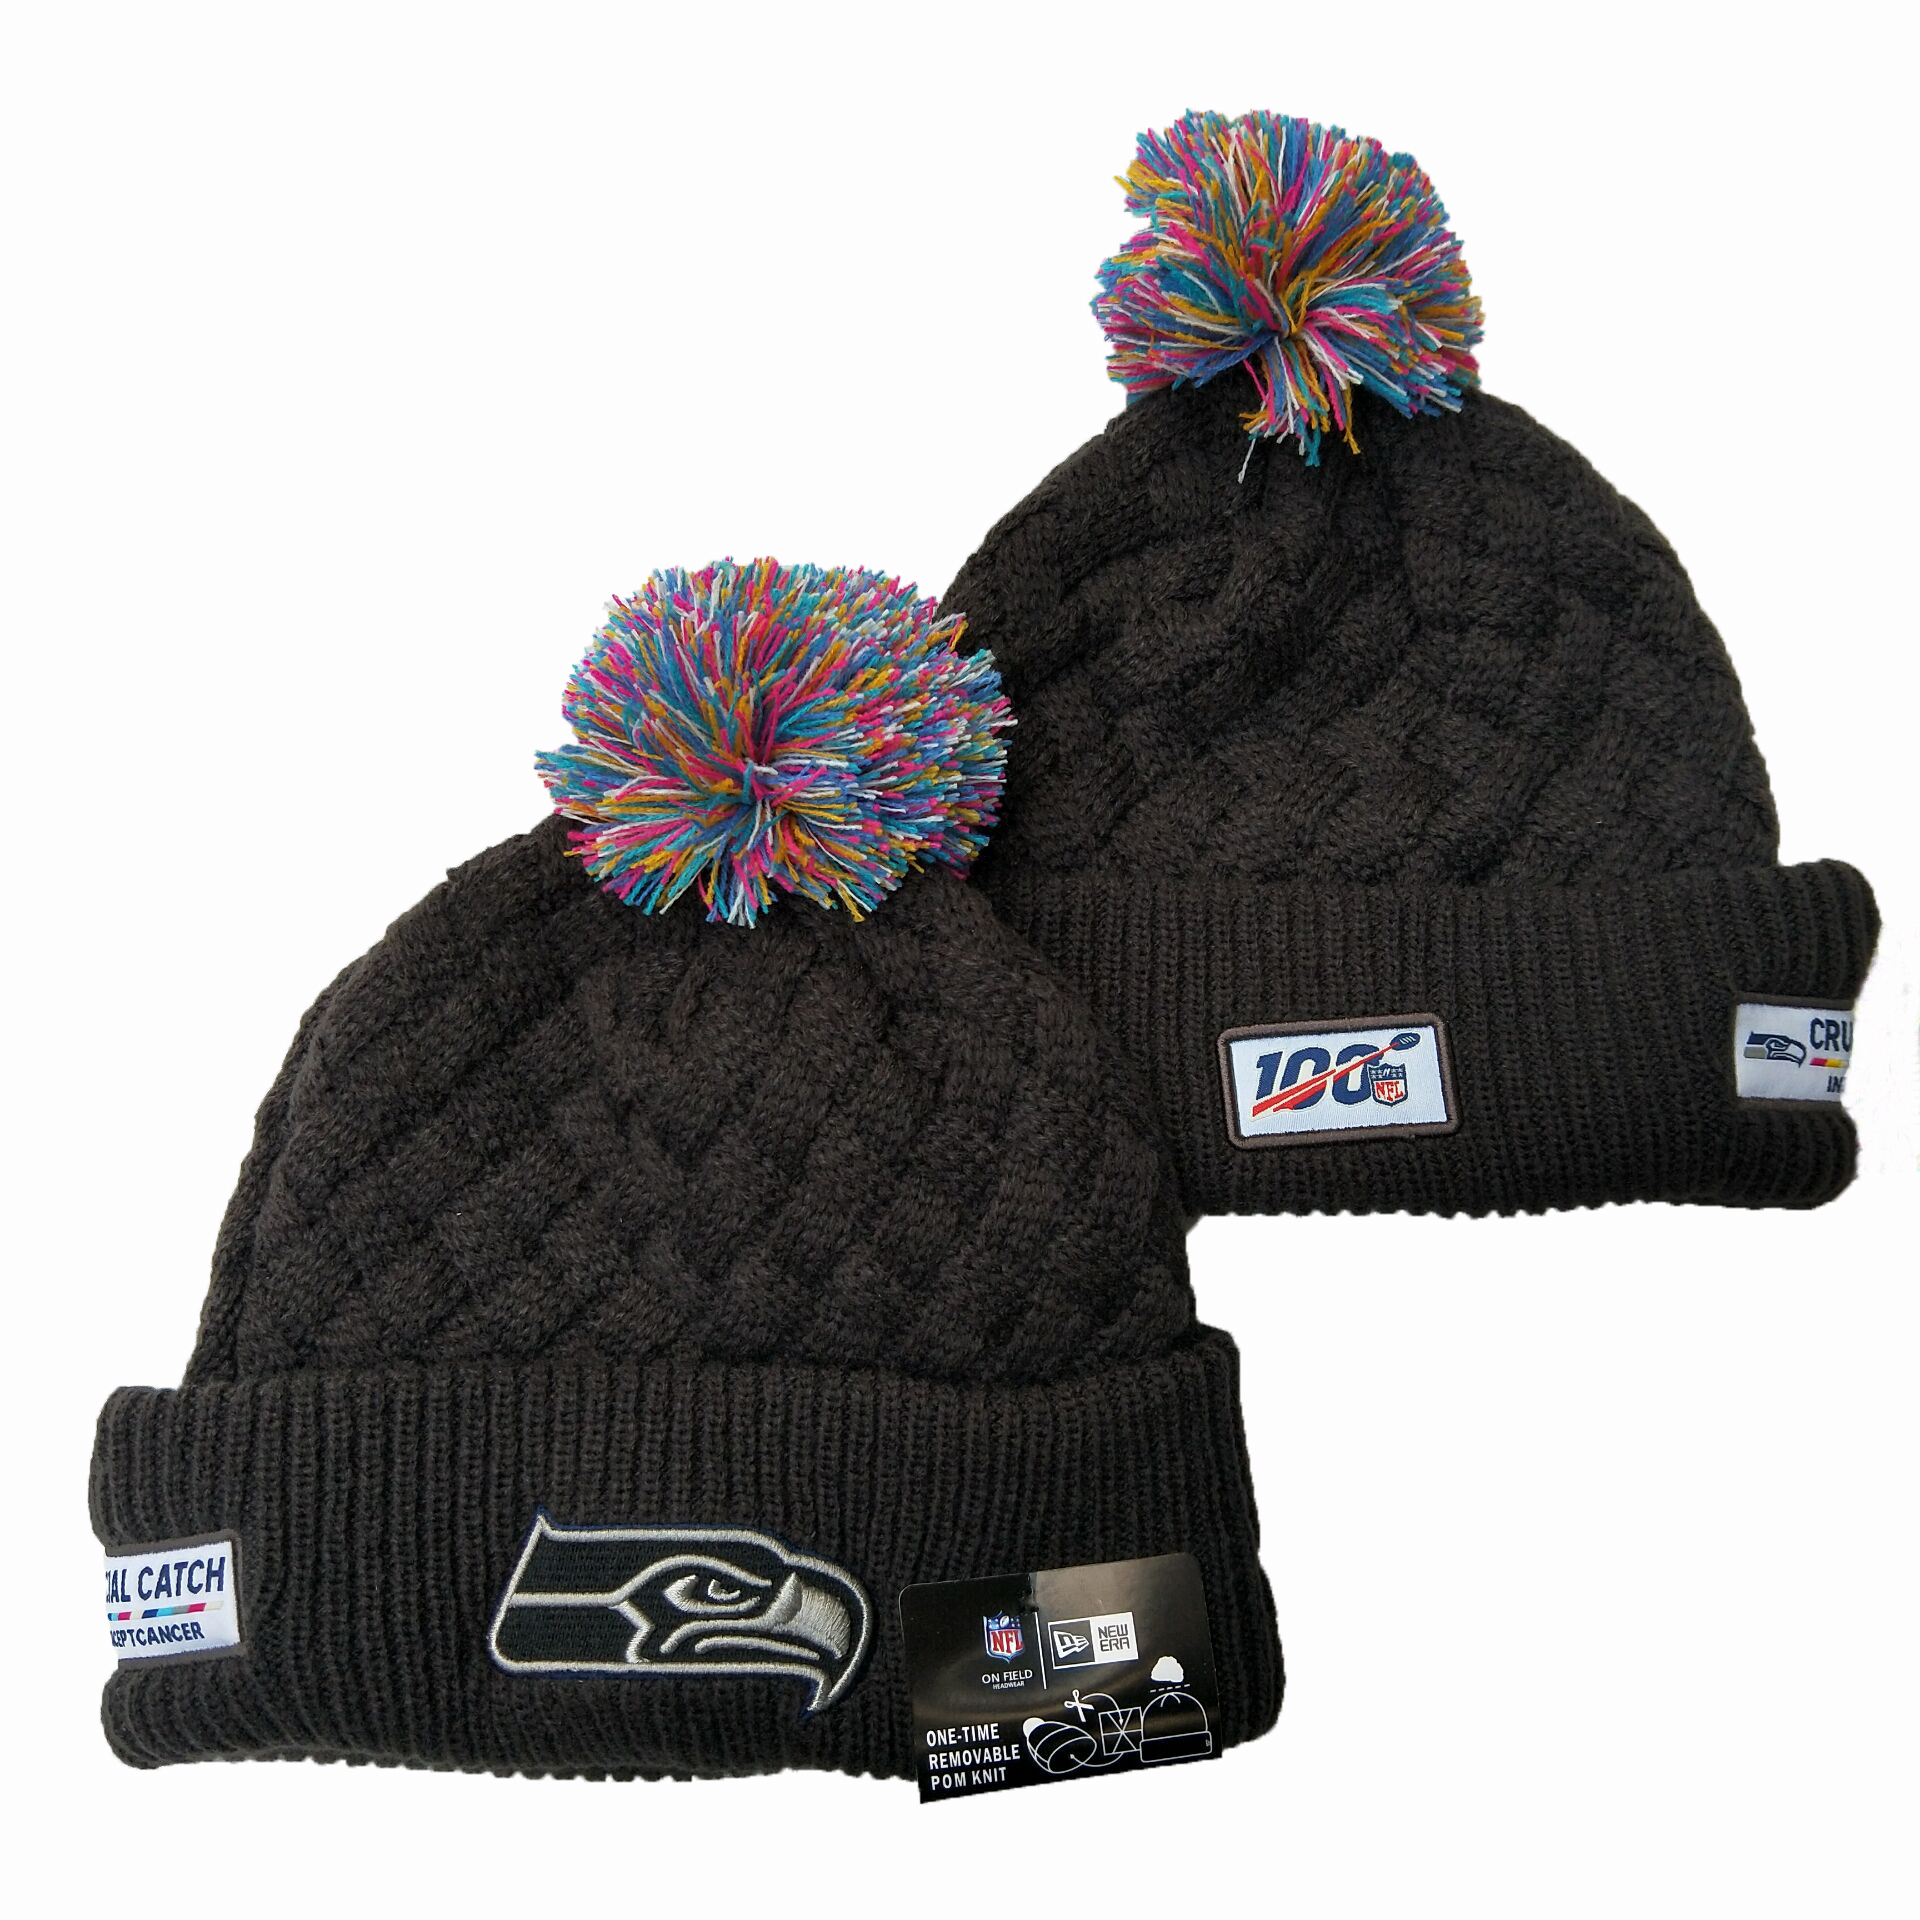 Seahawks Team Logo Black 100th Season Pom Knit Hat YD